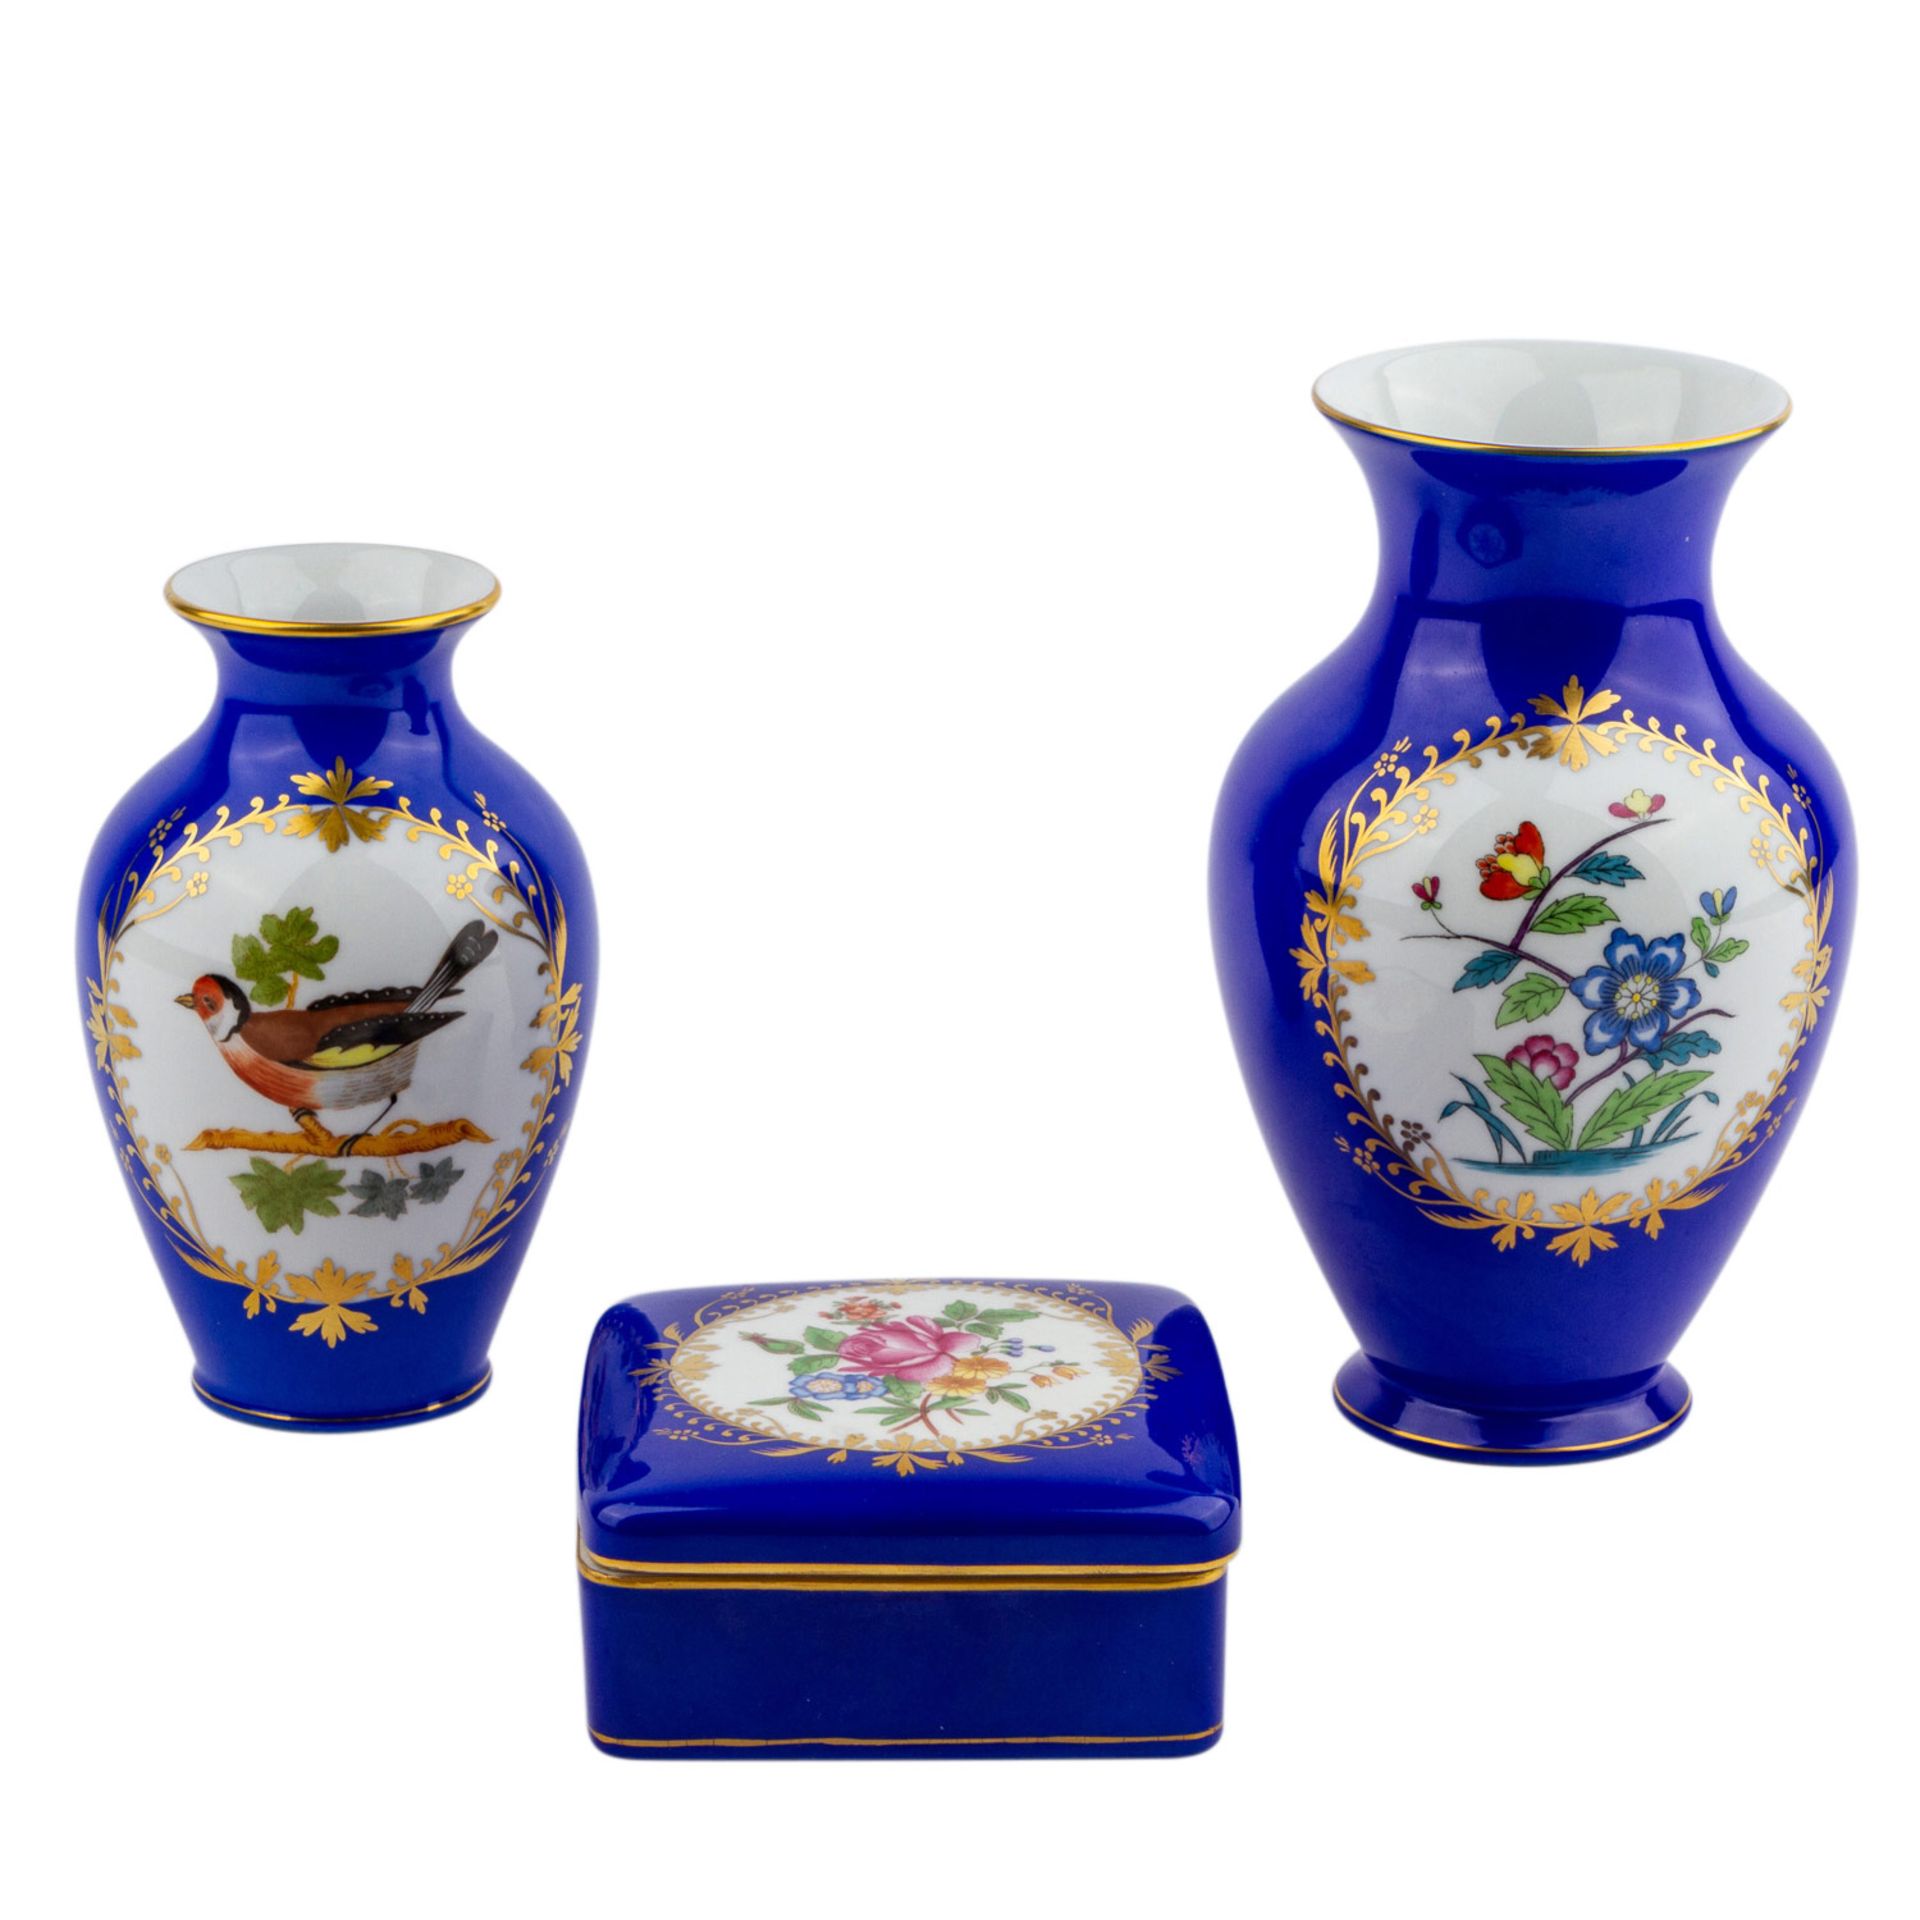 HEREND 2 Vasen und 1 Deckeldose, 20. Jhd.Weißporzellan mit blauem Fond und Goldstaffage, in